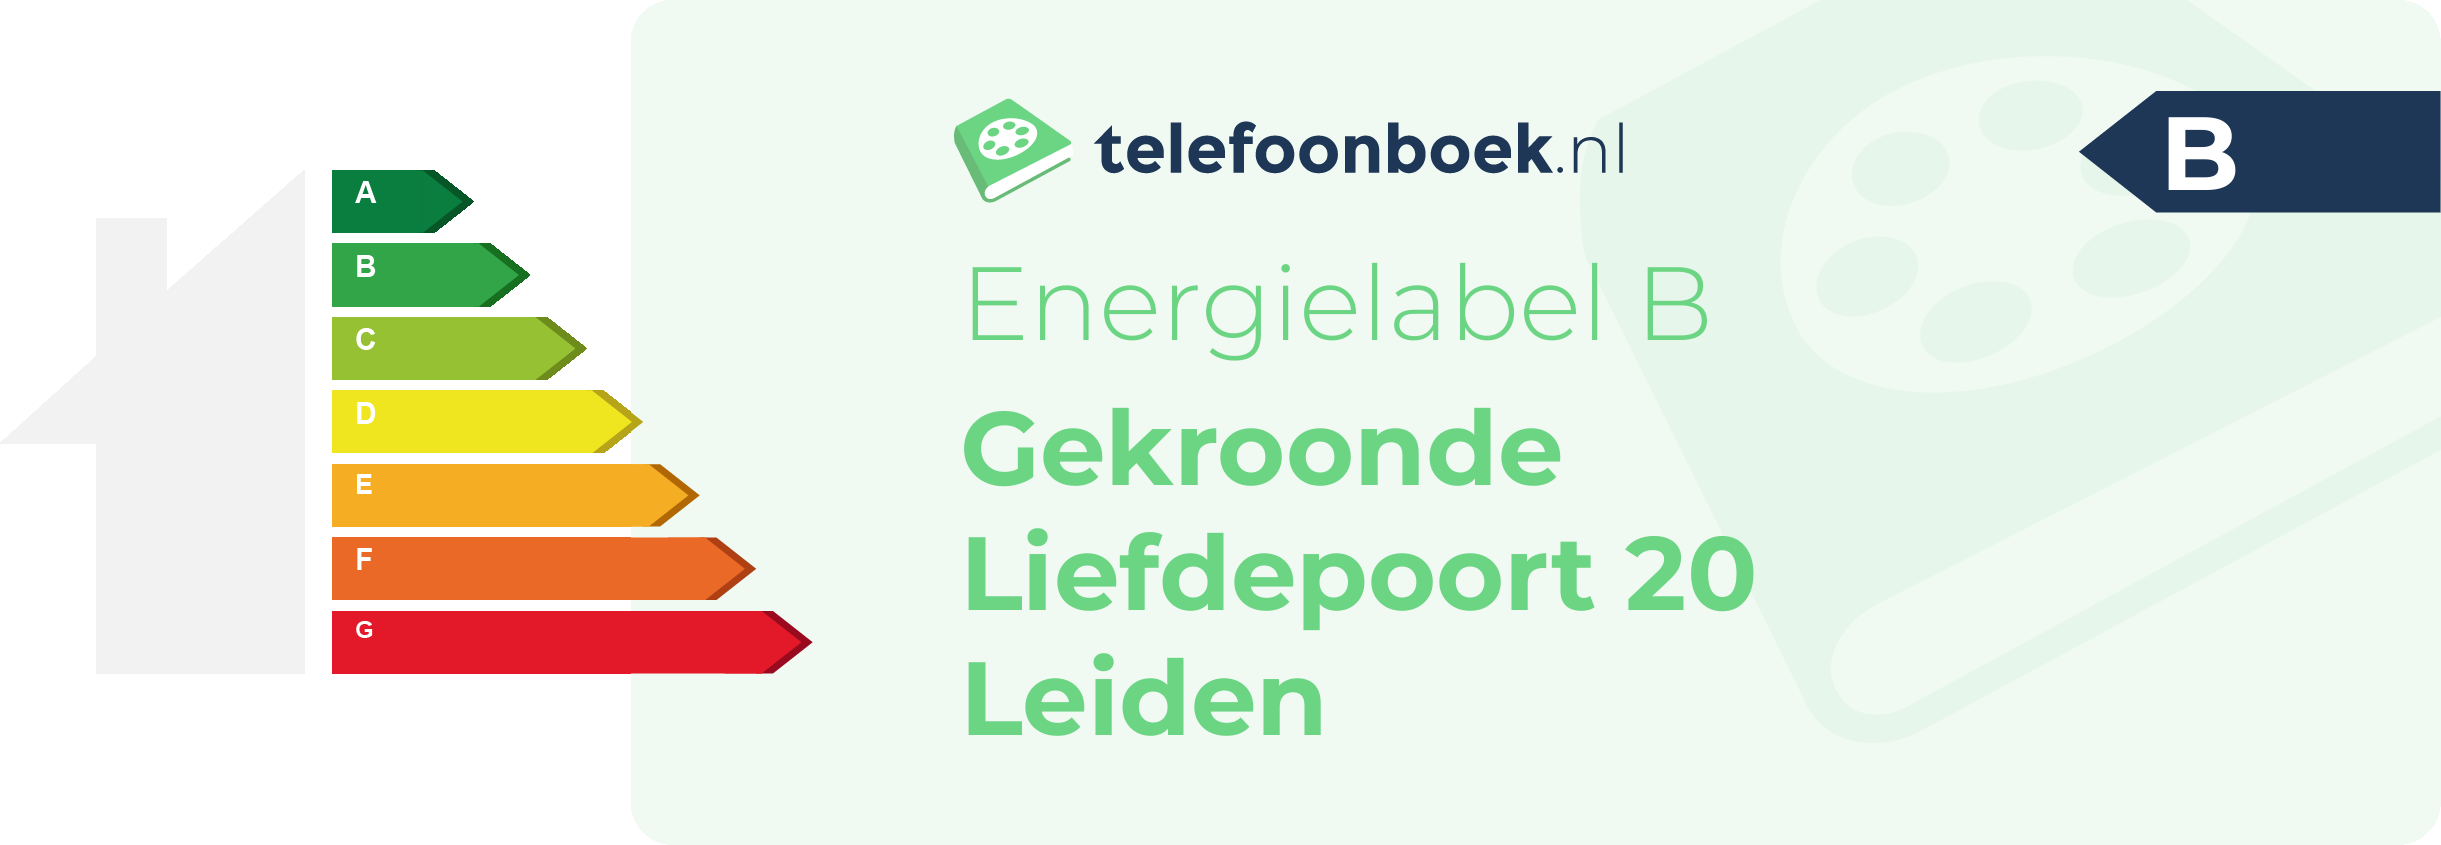 Energielabel Gekroonde Liefdepoort 20 Leiden